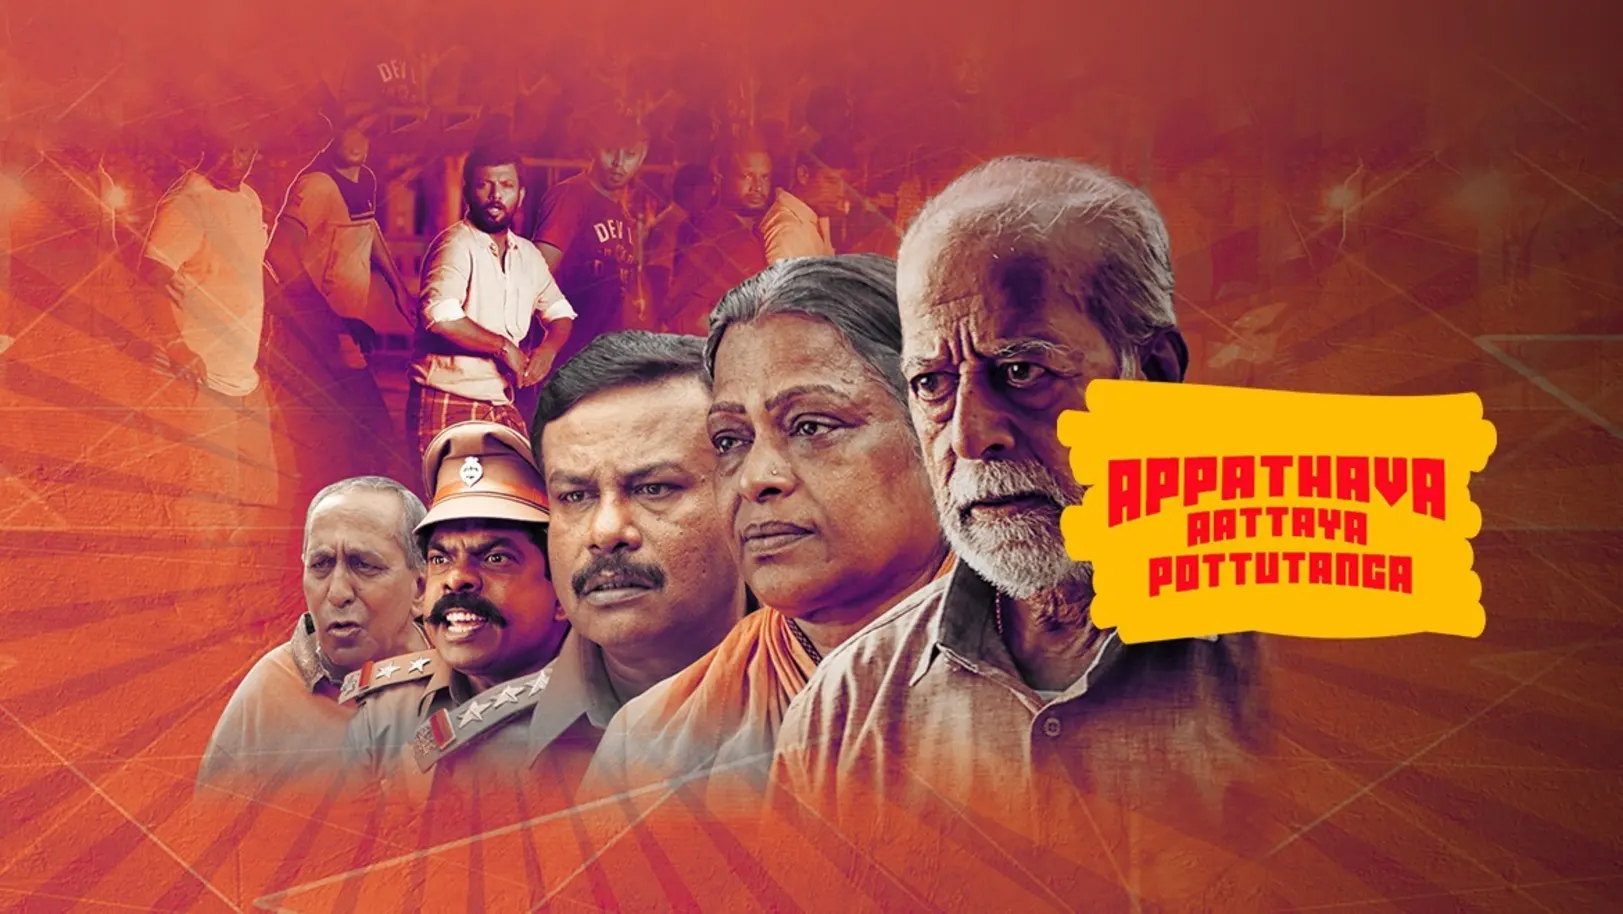 Appathava Aattaya Pottutanga Movie